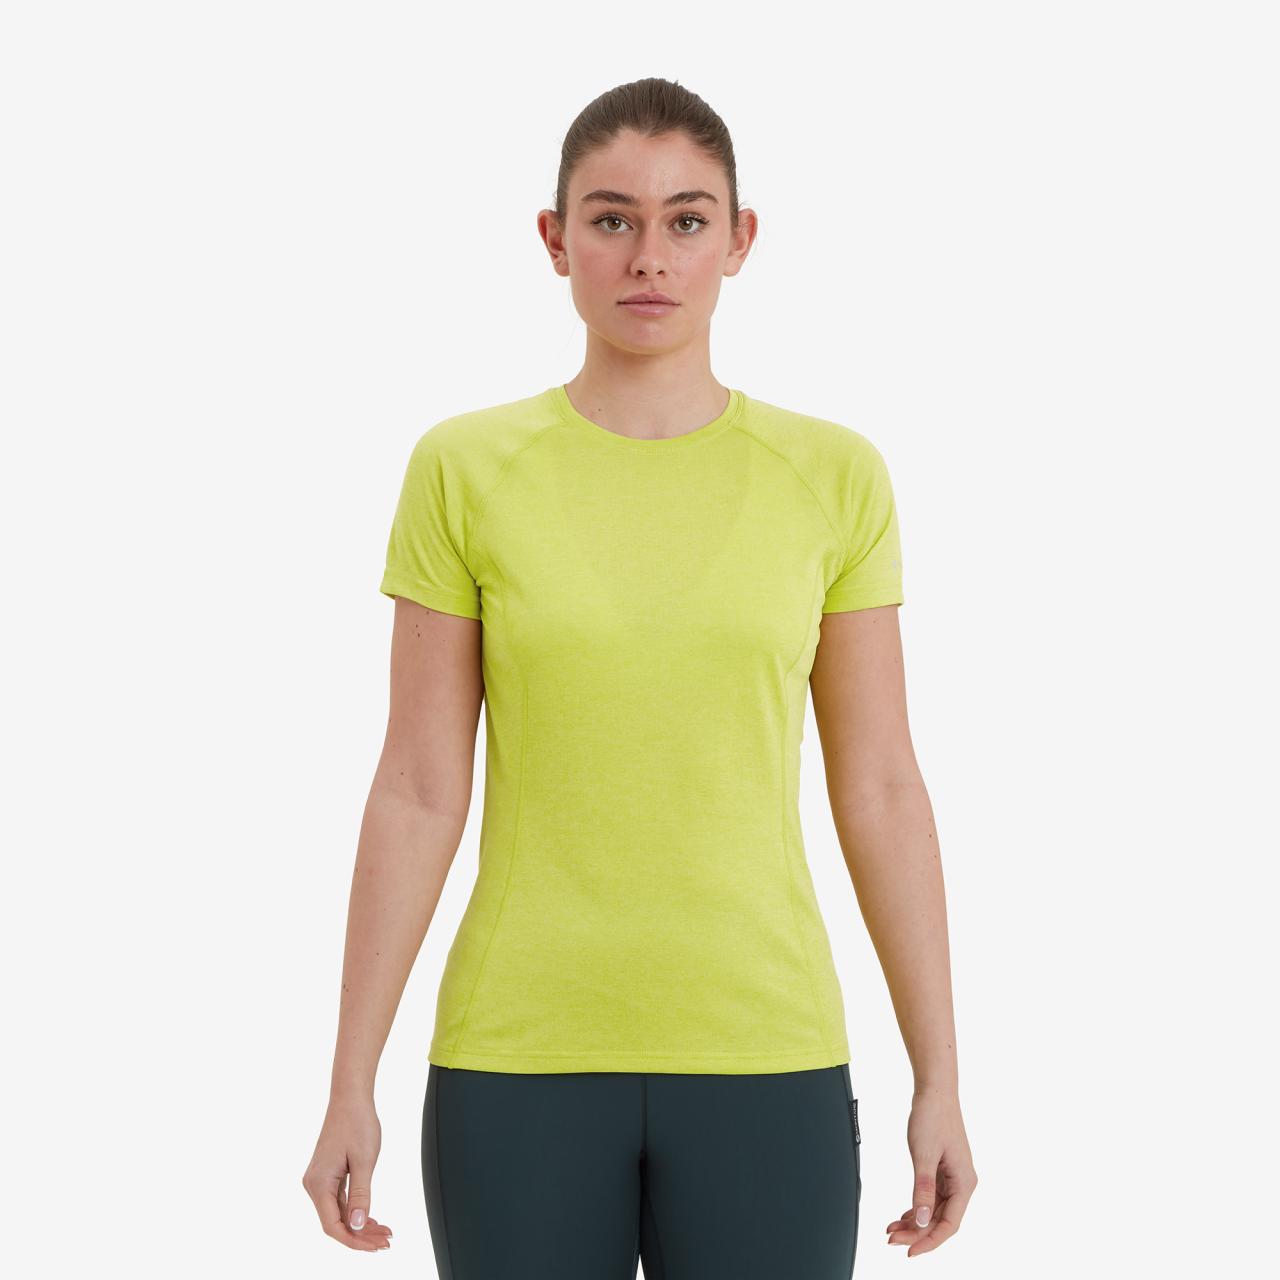 FEM DART T-SHIRT-CITRUS SPRING-UK16/XL dámské triko žlutozelené